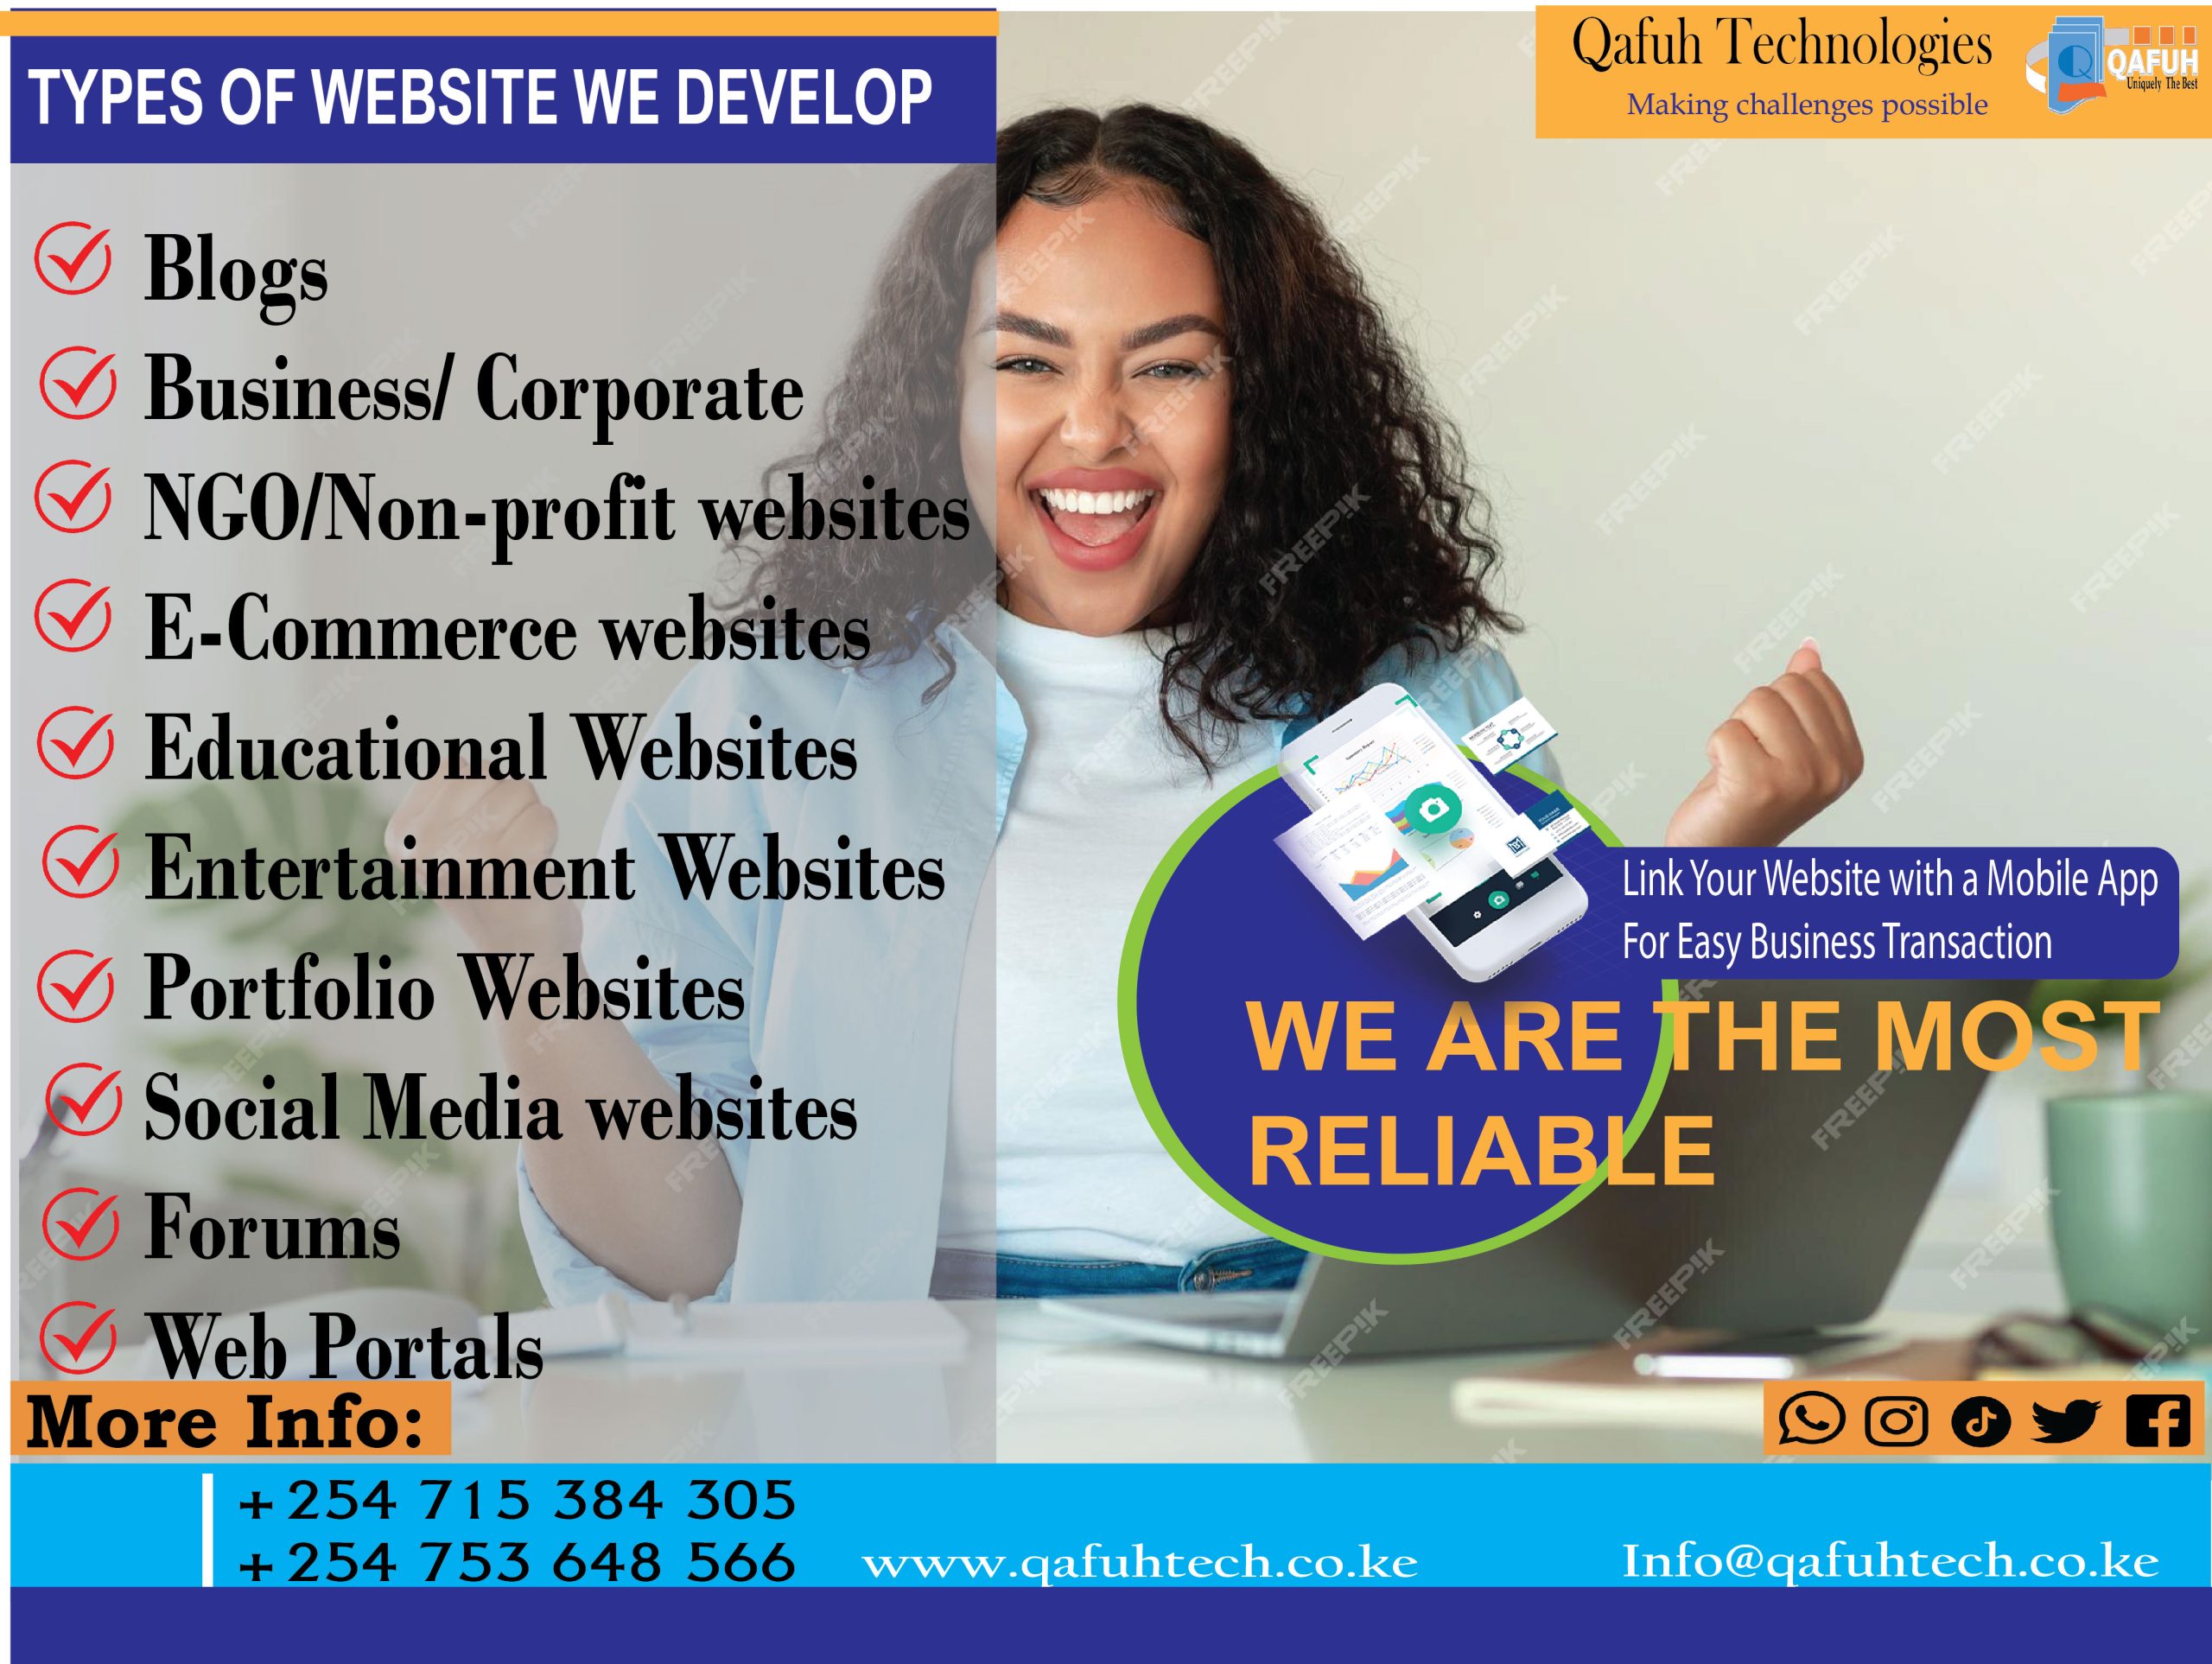 Qafuh website type poster